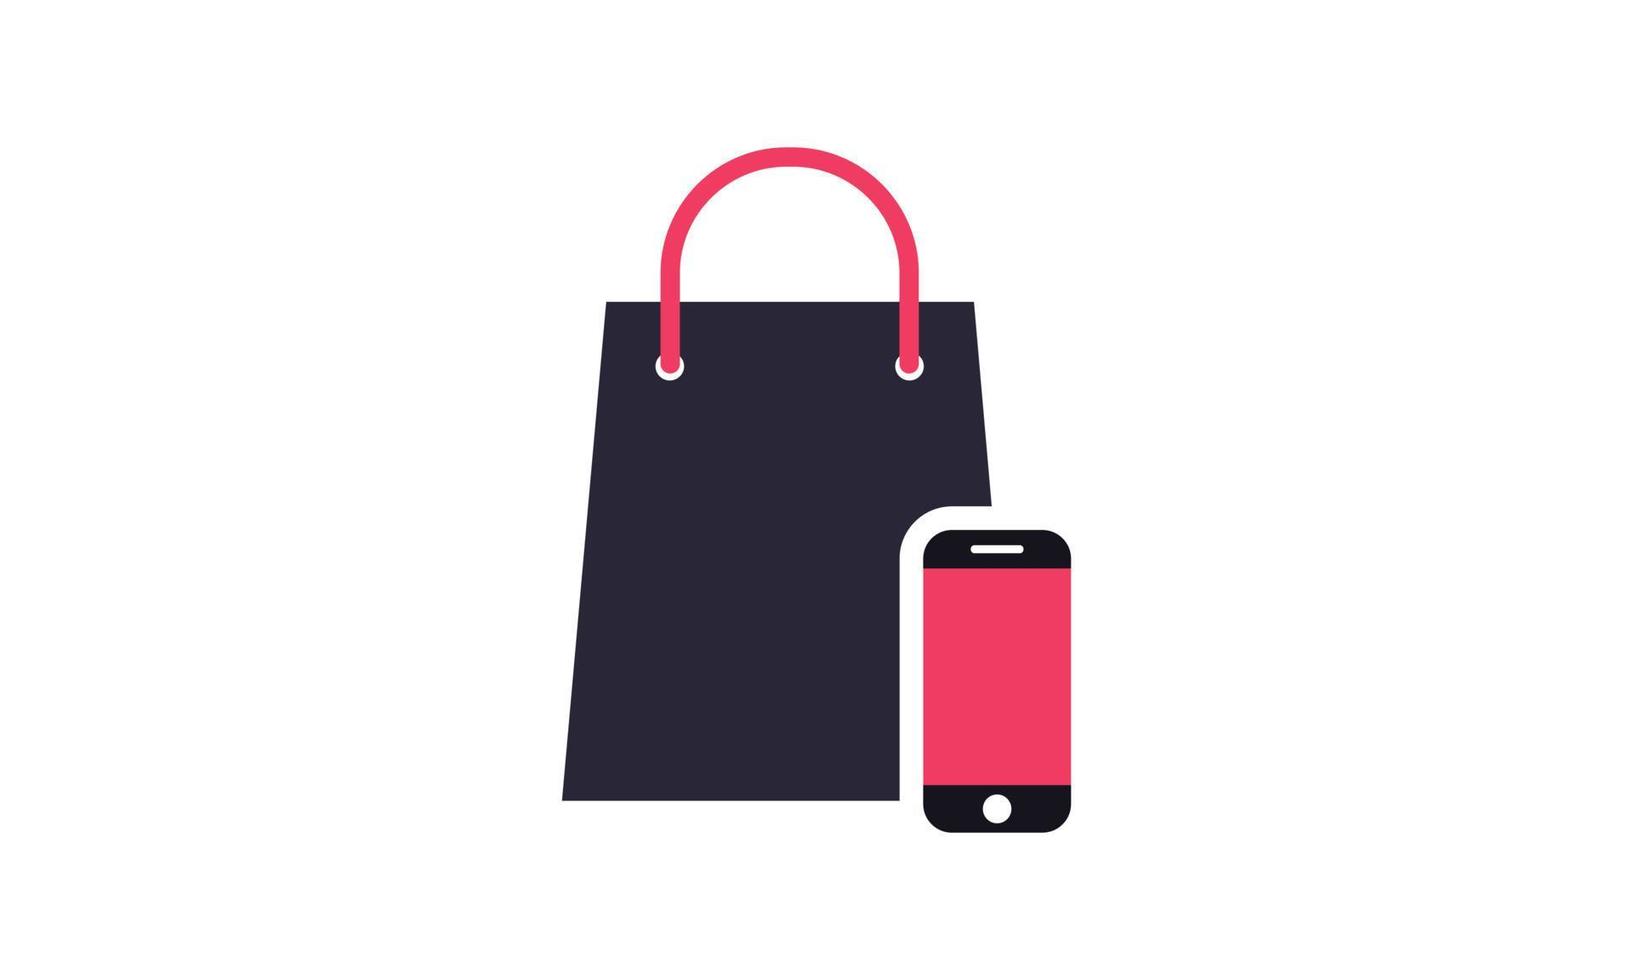 Asbtract Smartphone Trolley Online Shop Logo Designs Vorlage Illustration Vektorgrafik von Shopping und Shop vektor